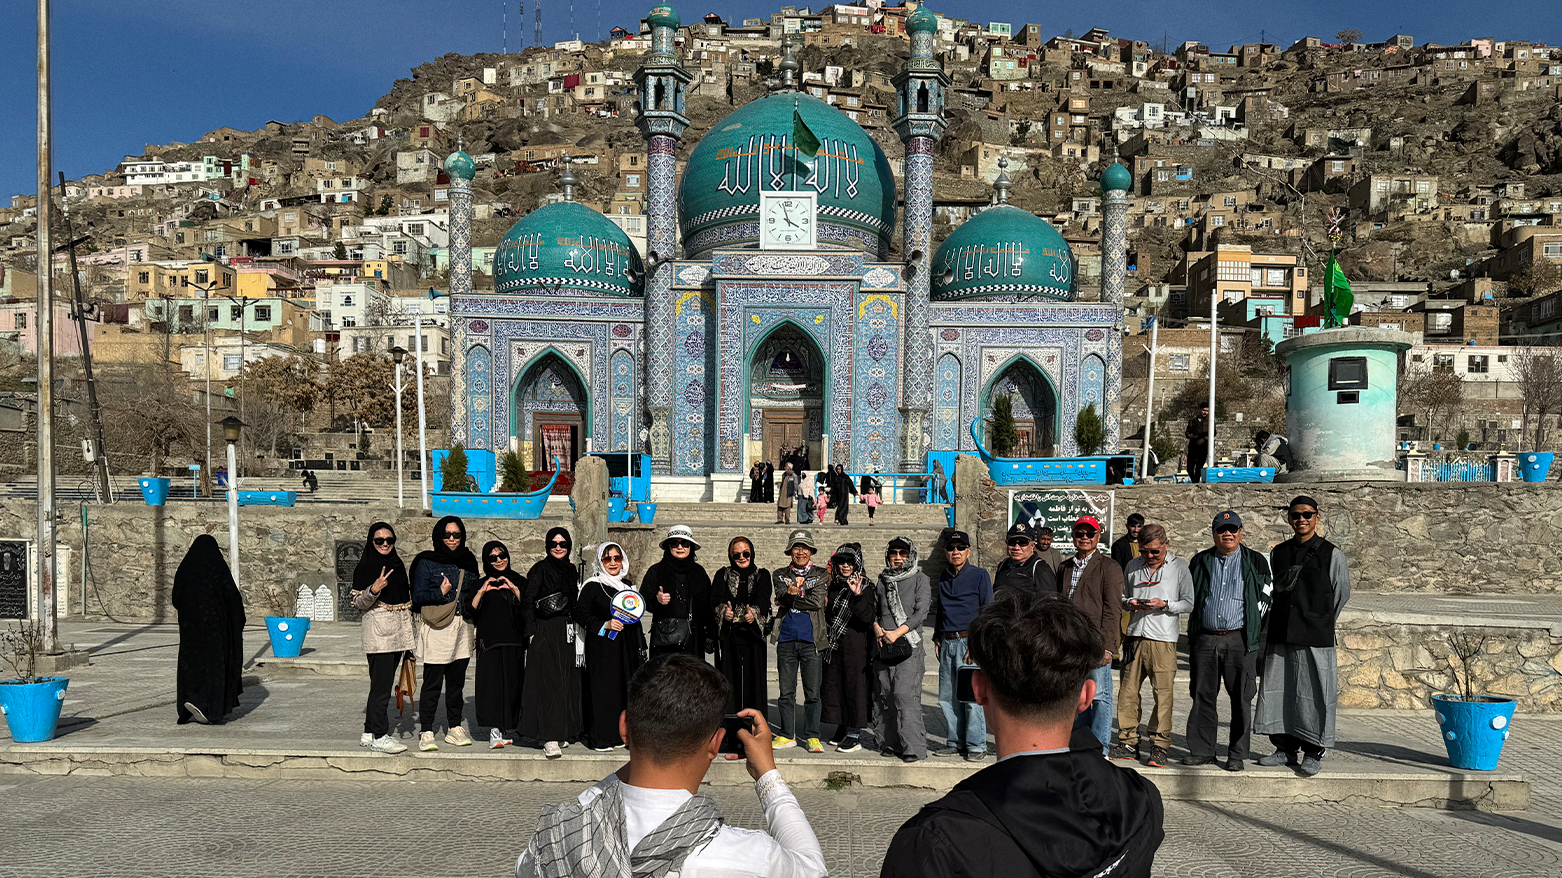 A unique place foreigners visit postwar Afghanistan